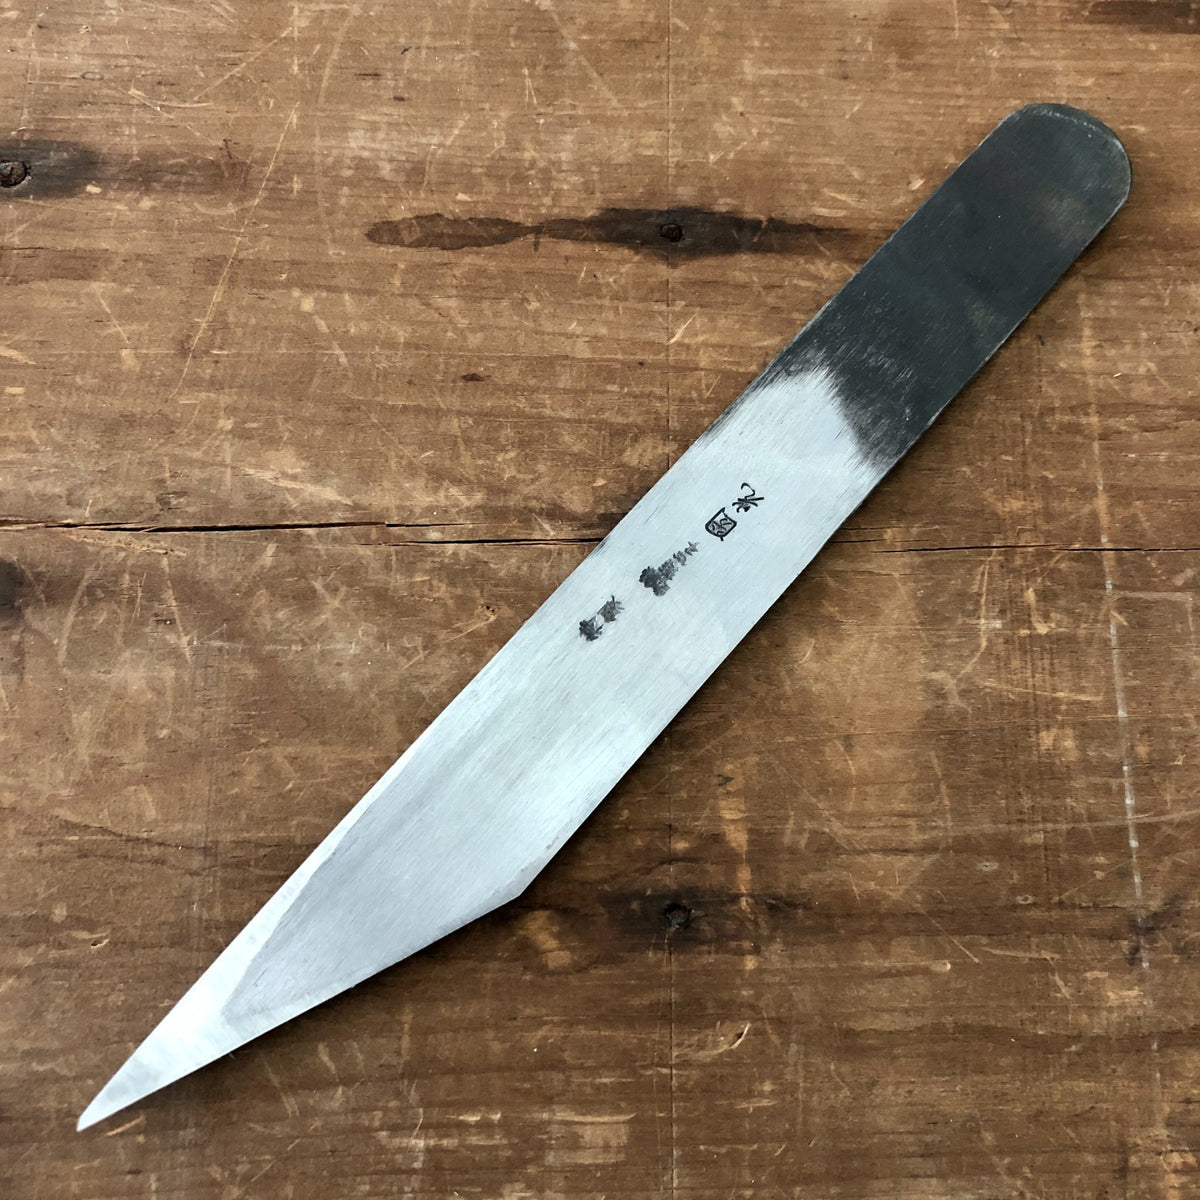  Left Hand / Japanese/Kiridashi Craft Pocket Knife